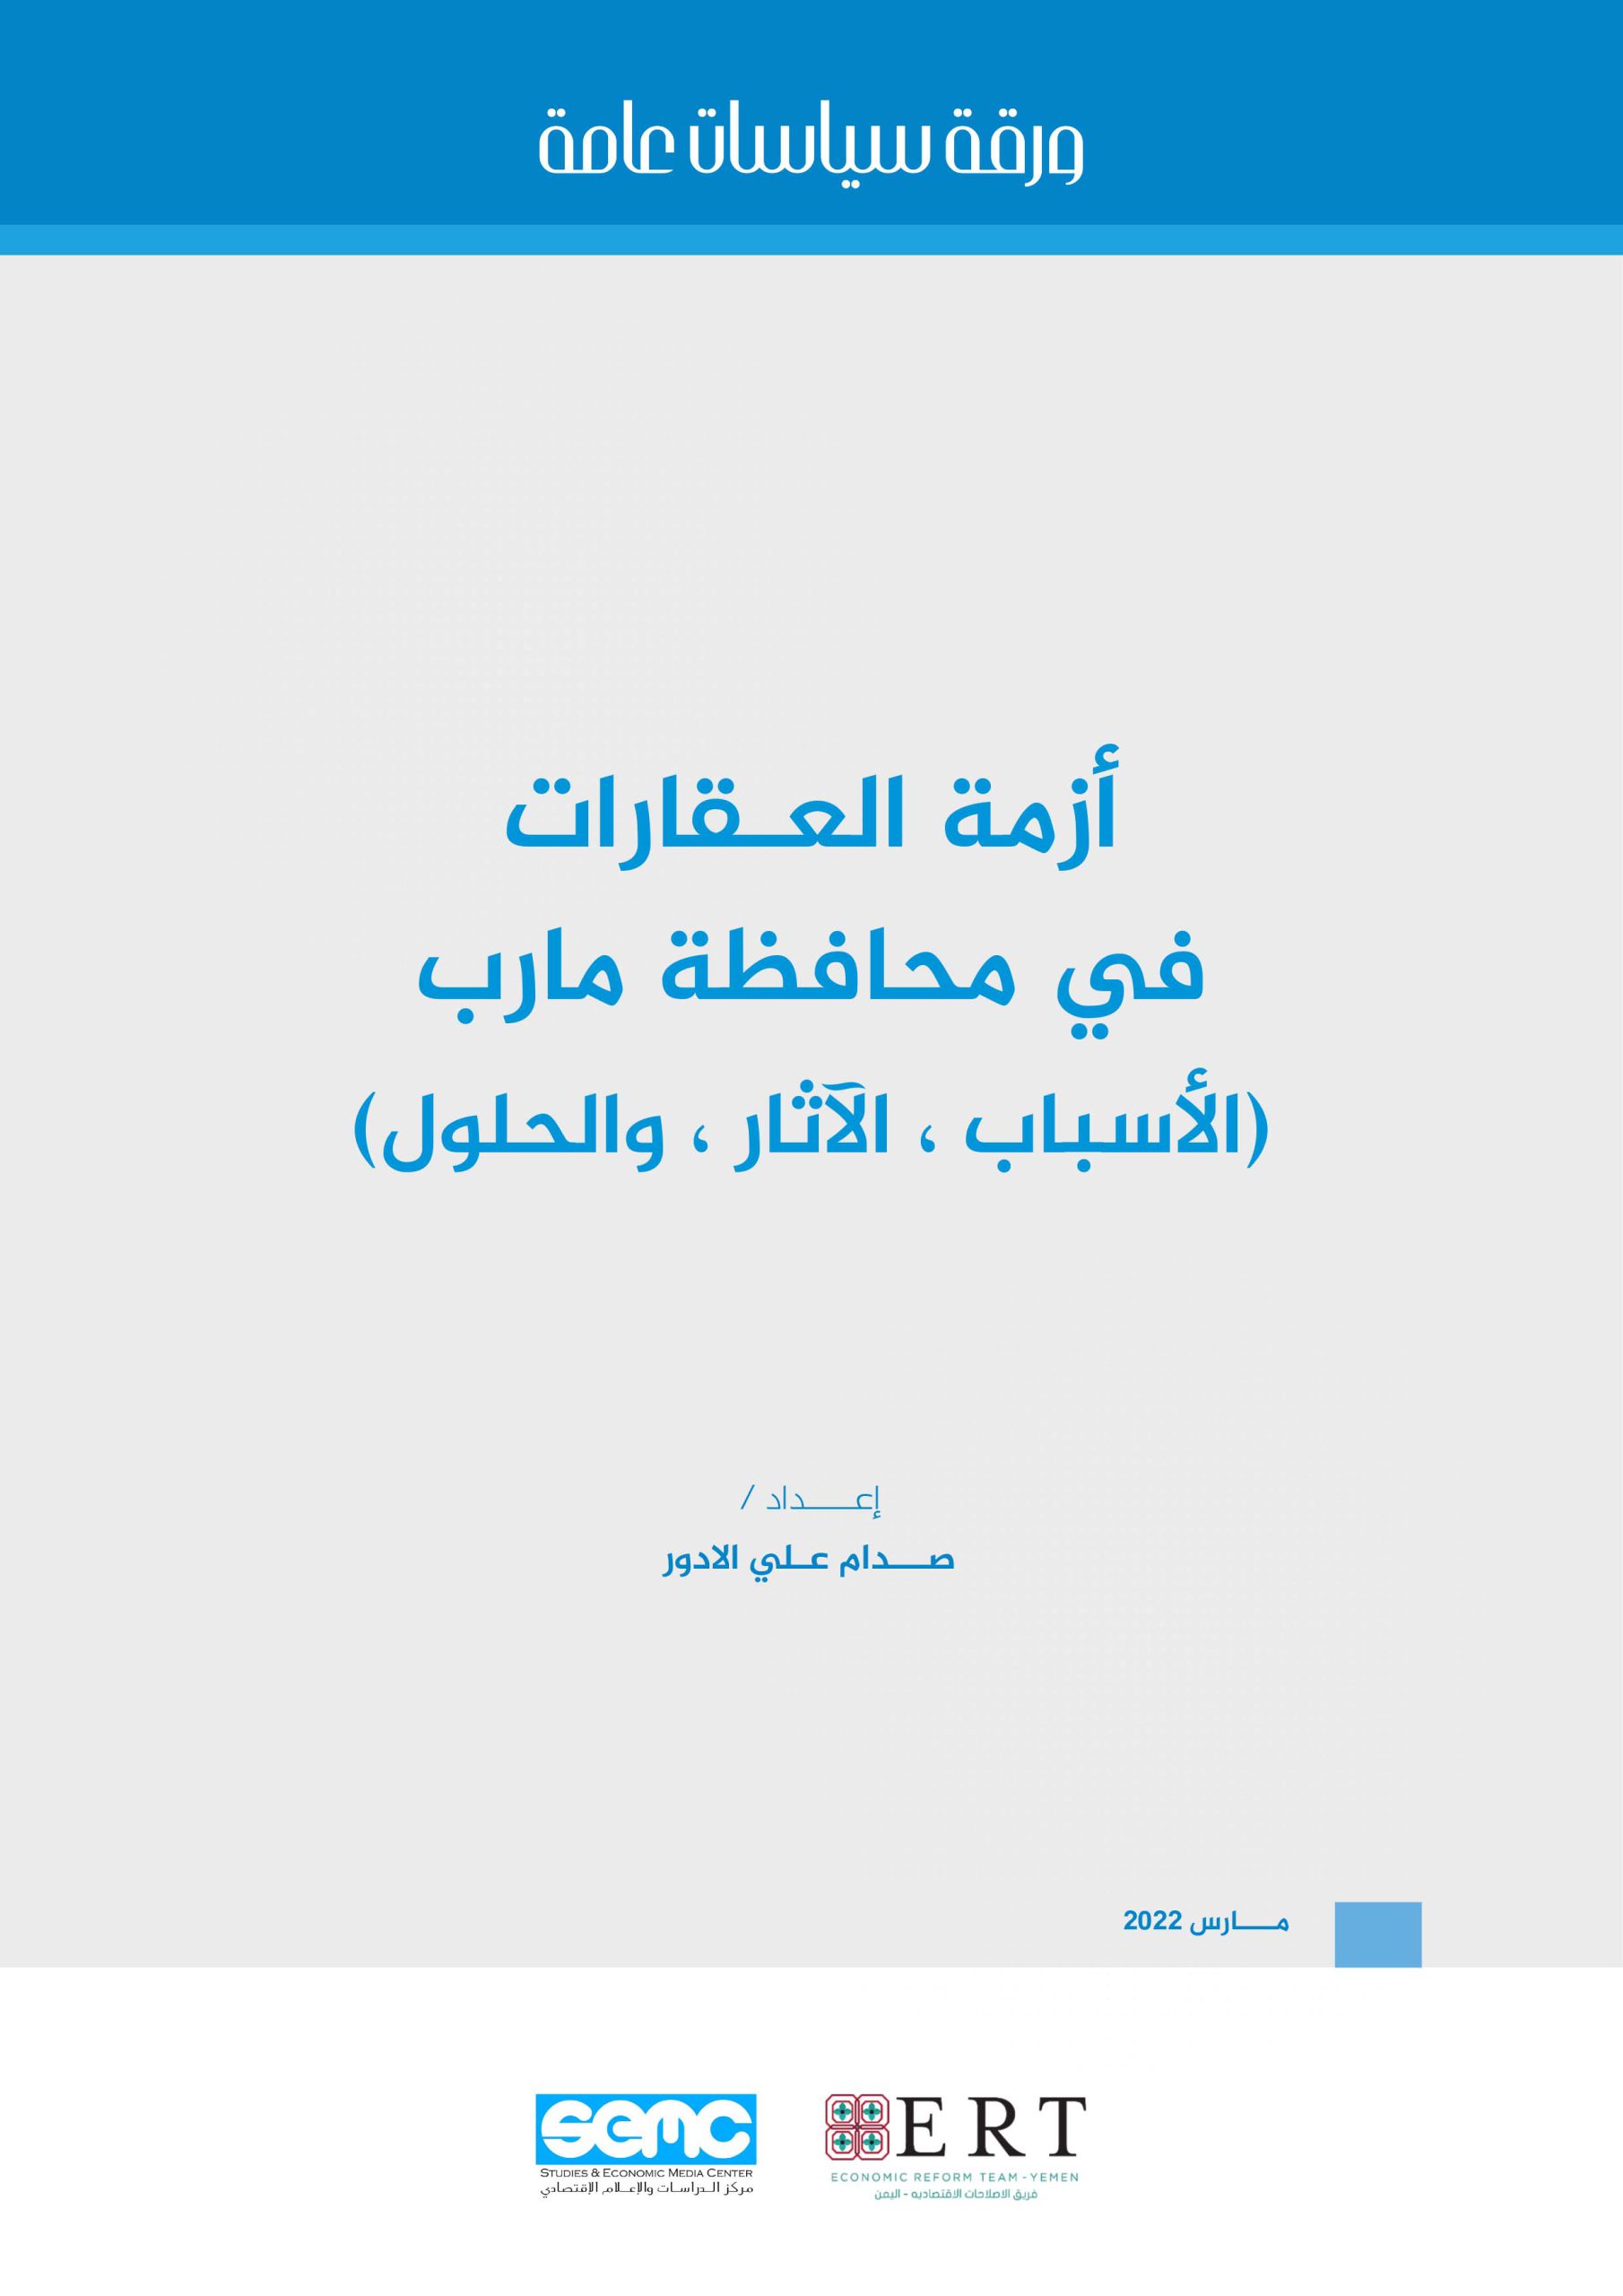 ورقة سياسات عامة حول أزمة العقارات في محافظة مارب (الأسباب ، الآثار ، والحلول)